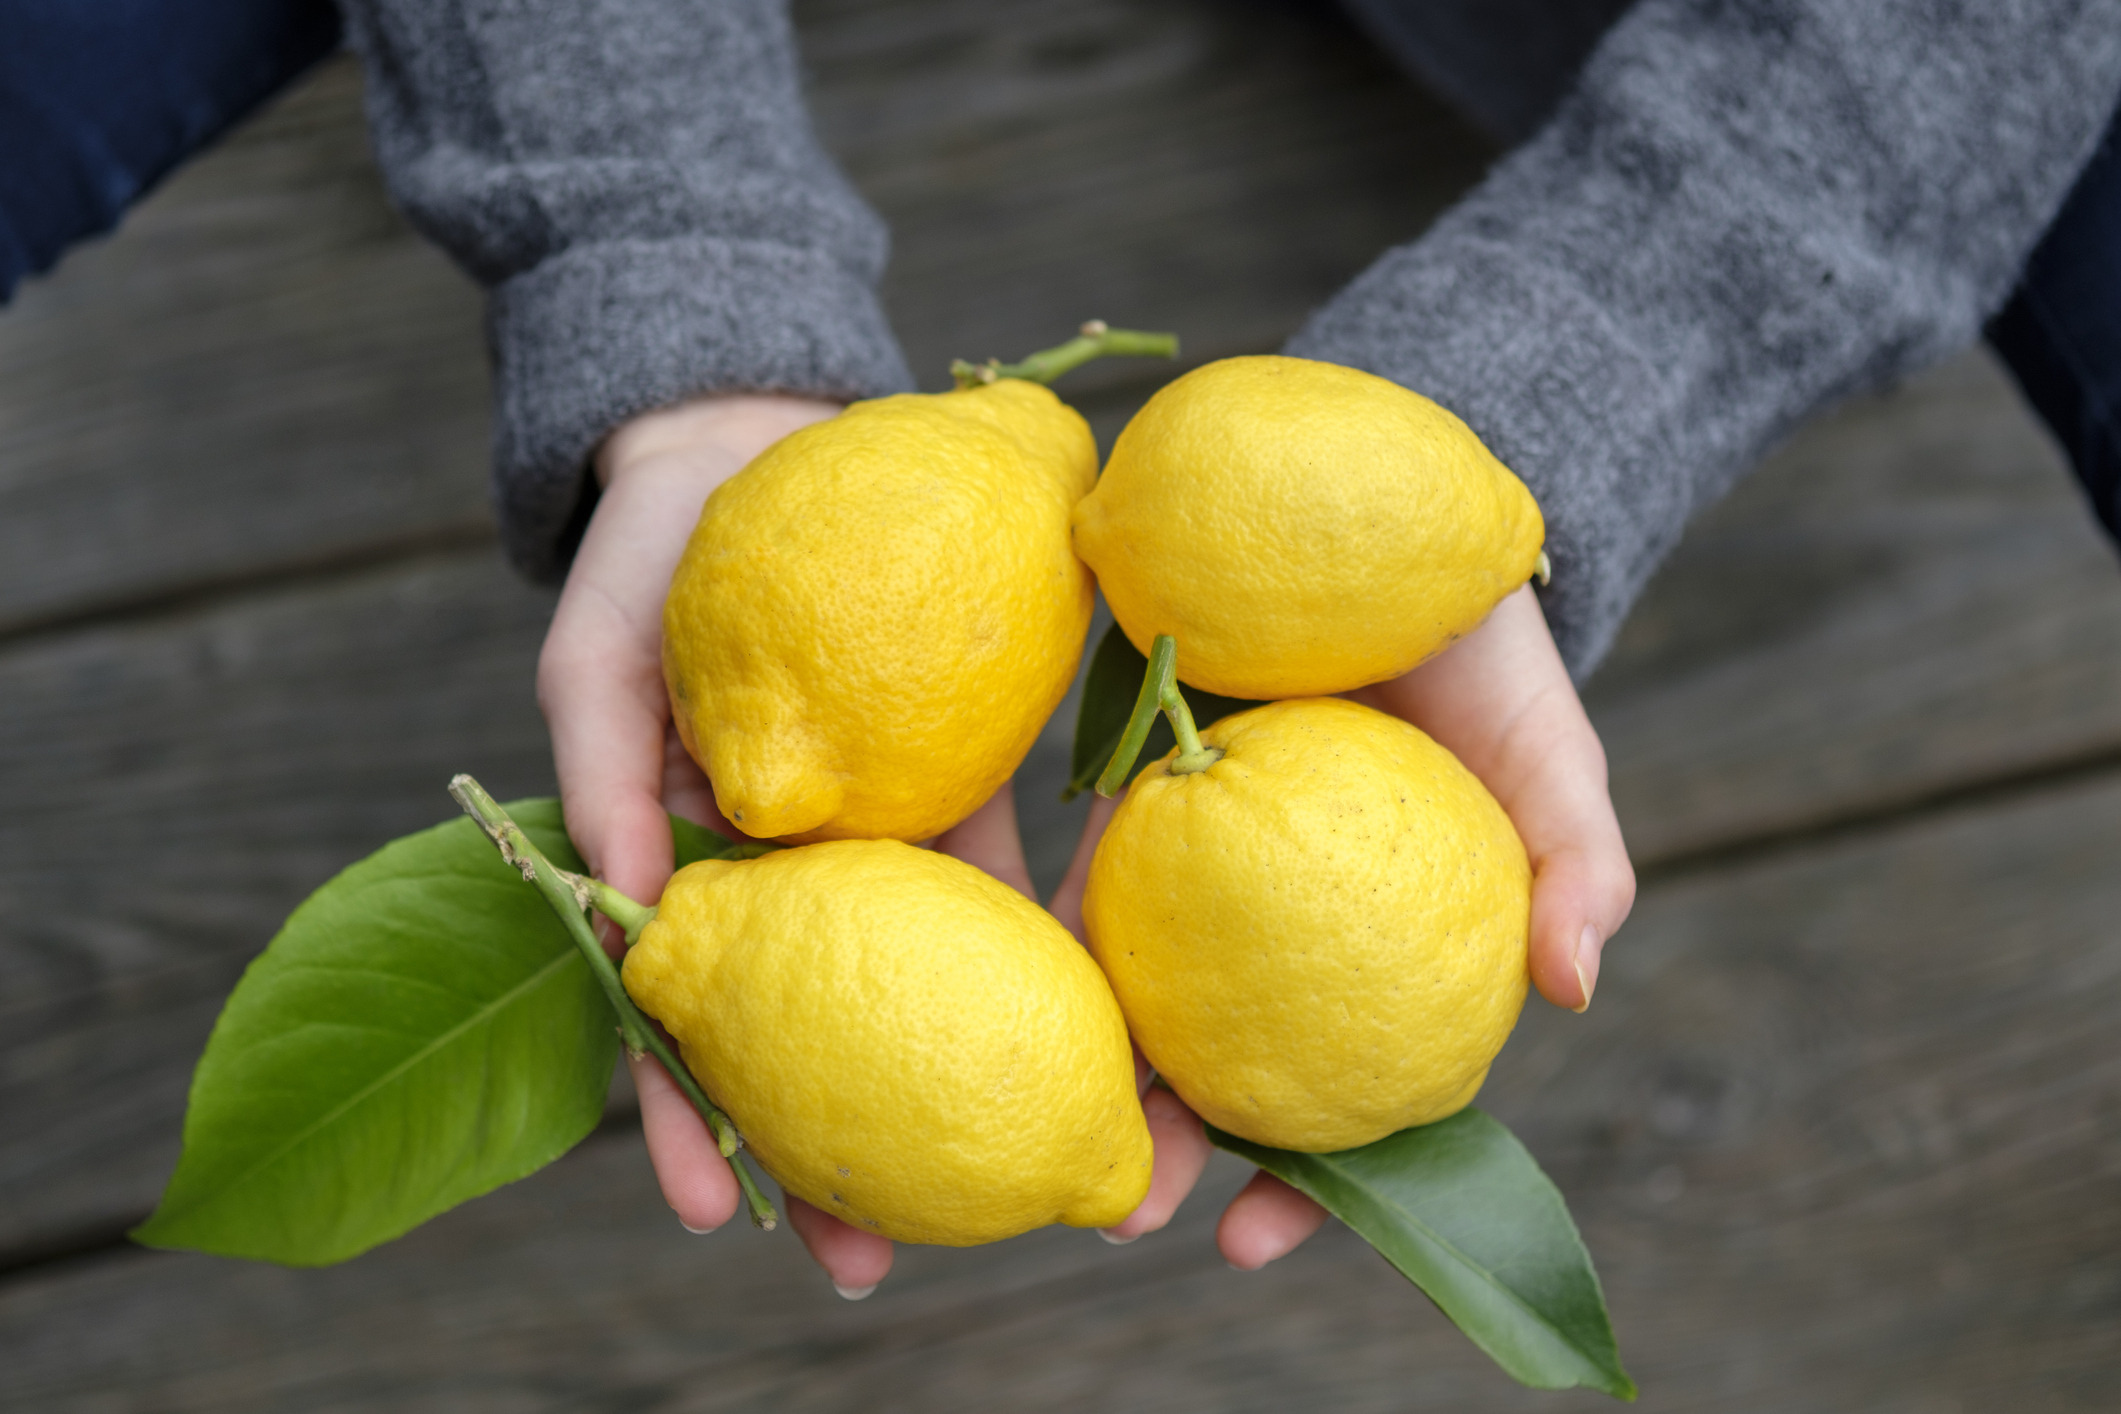 Лимон известен как укрепитель иммунной системы, а ещё запах этого цитрусового привлекает деньги. Фото © Getty Images / Westend61